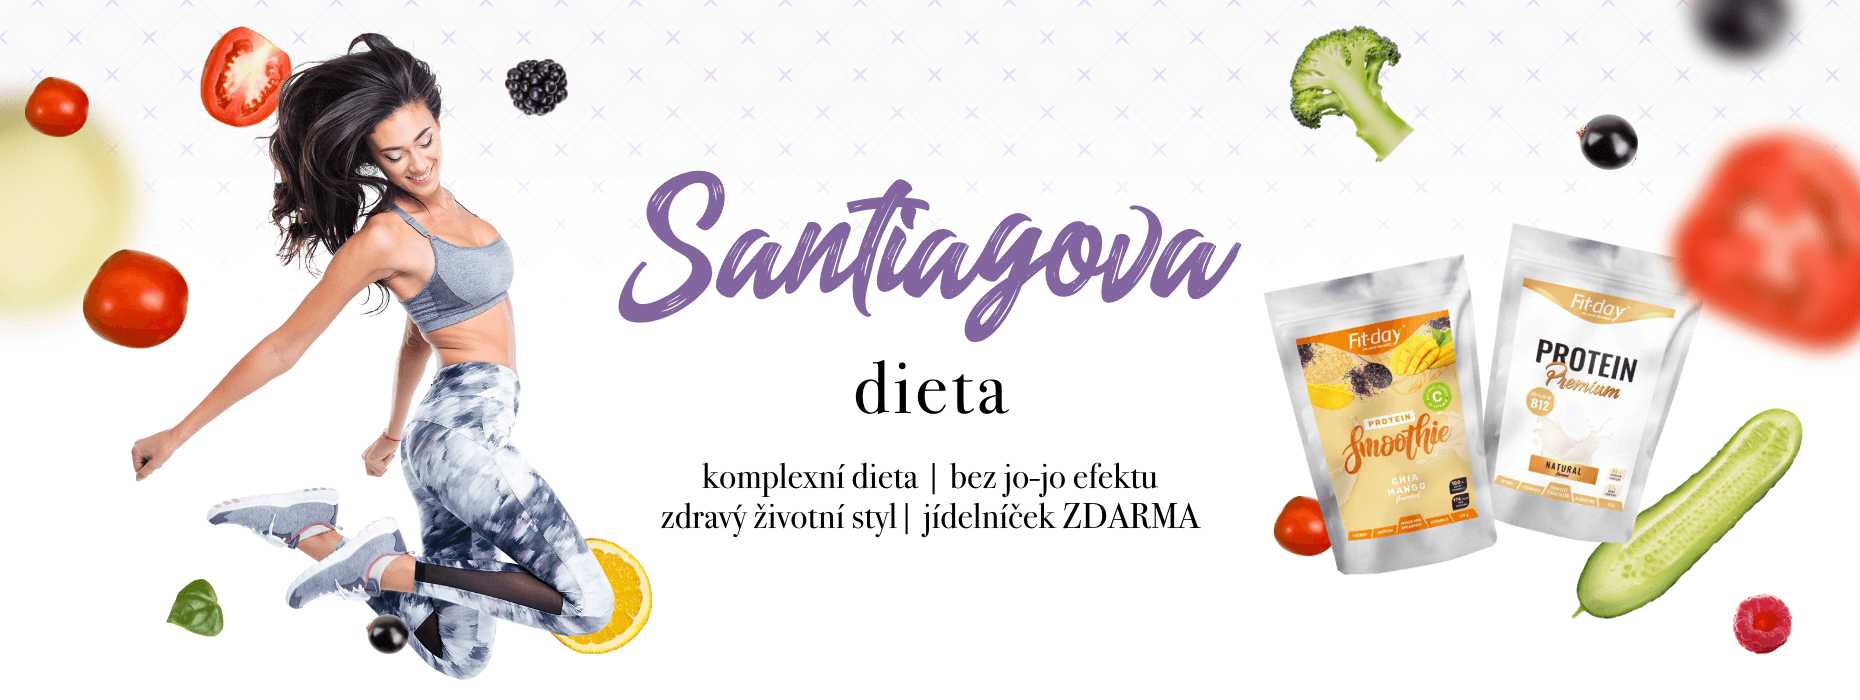 santiagova_dieta_1860x700_cz